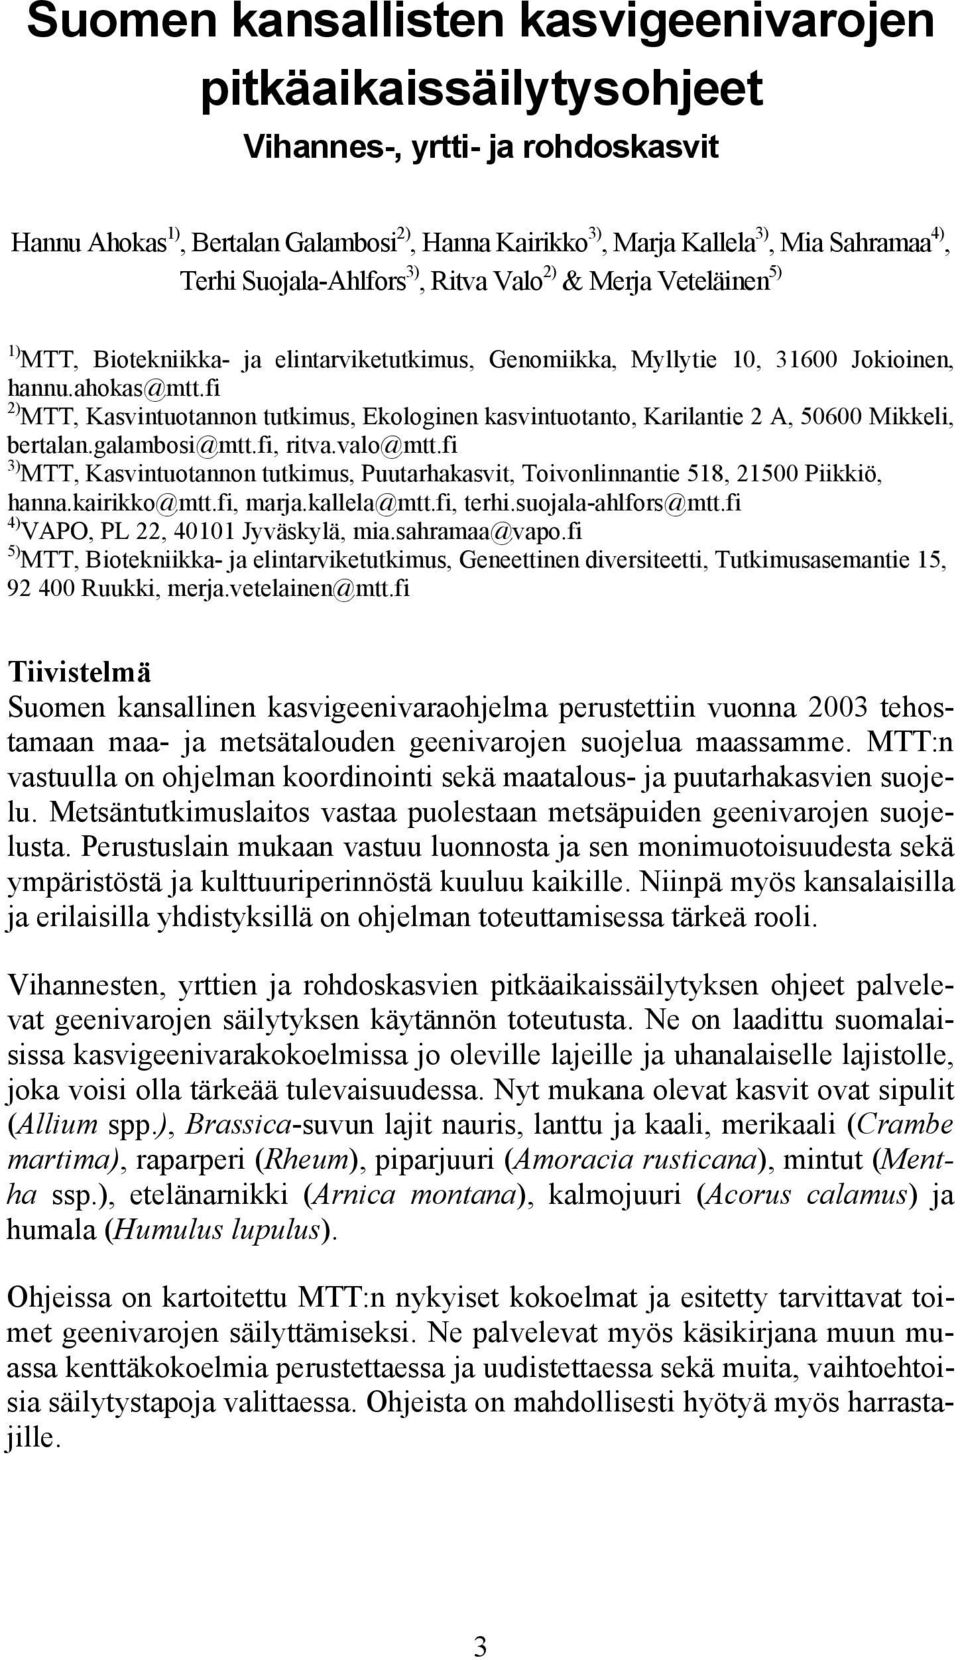 fi 2) MTT, Kasvintuotannon tutkimus, Ekologinen kasvintuotanto, Karilantie 2 A, 50600 Mikkeli, bertalan.galambosi@mtt.fi, ritva.valo@mtt.